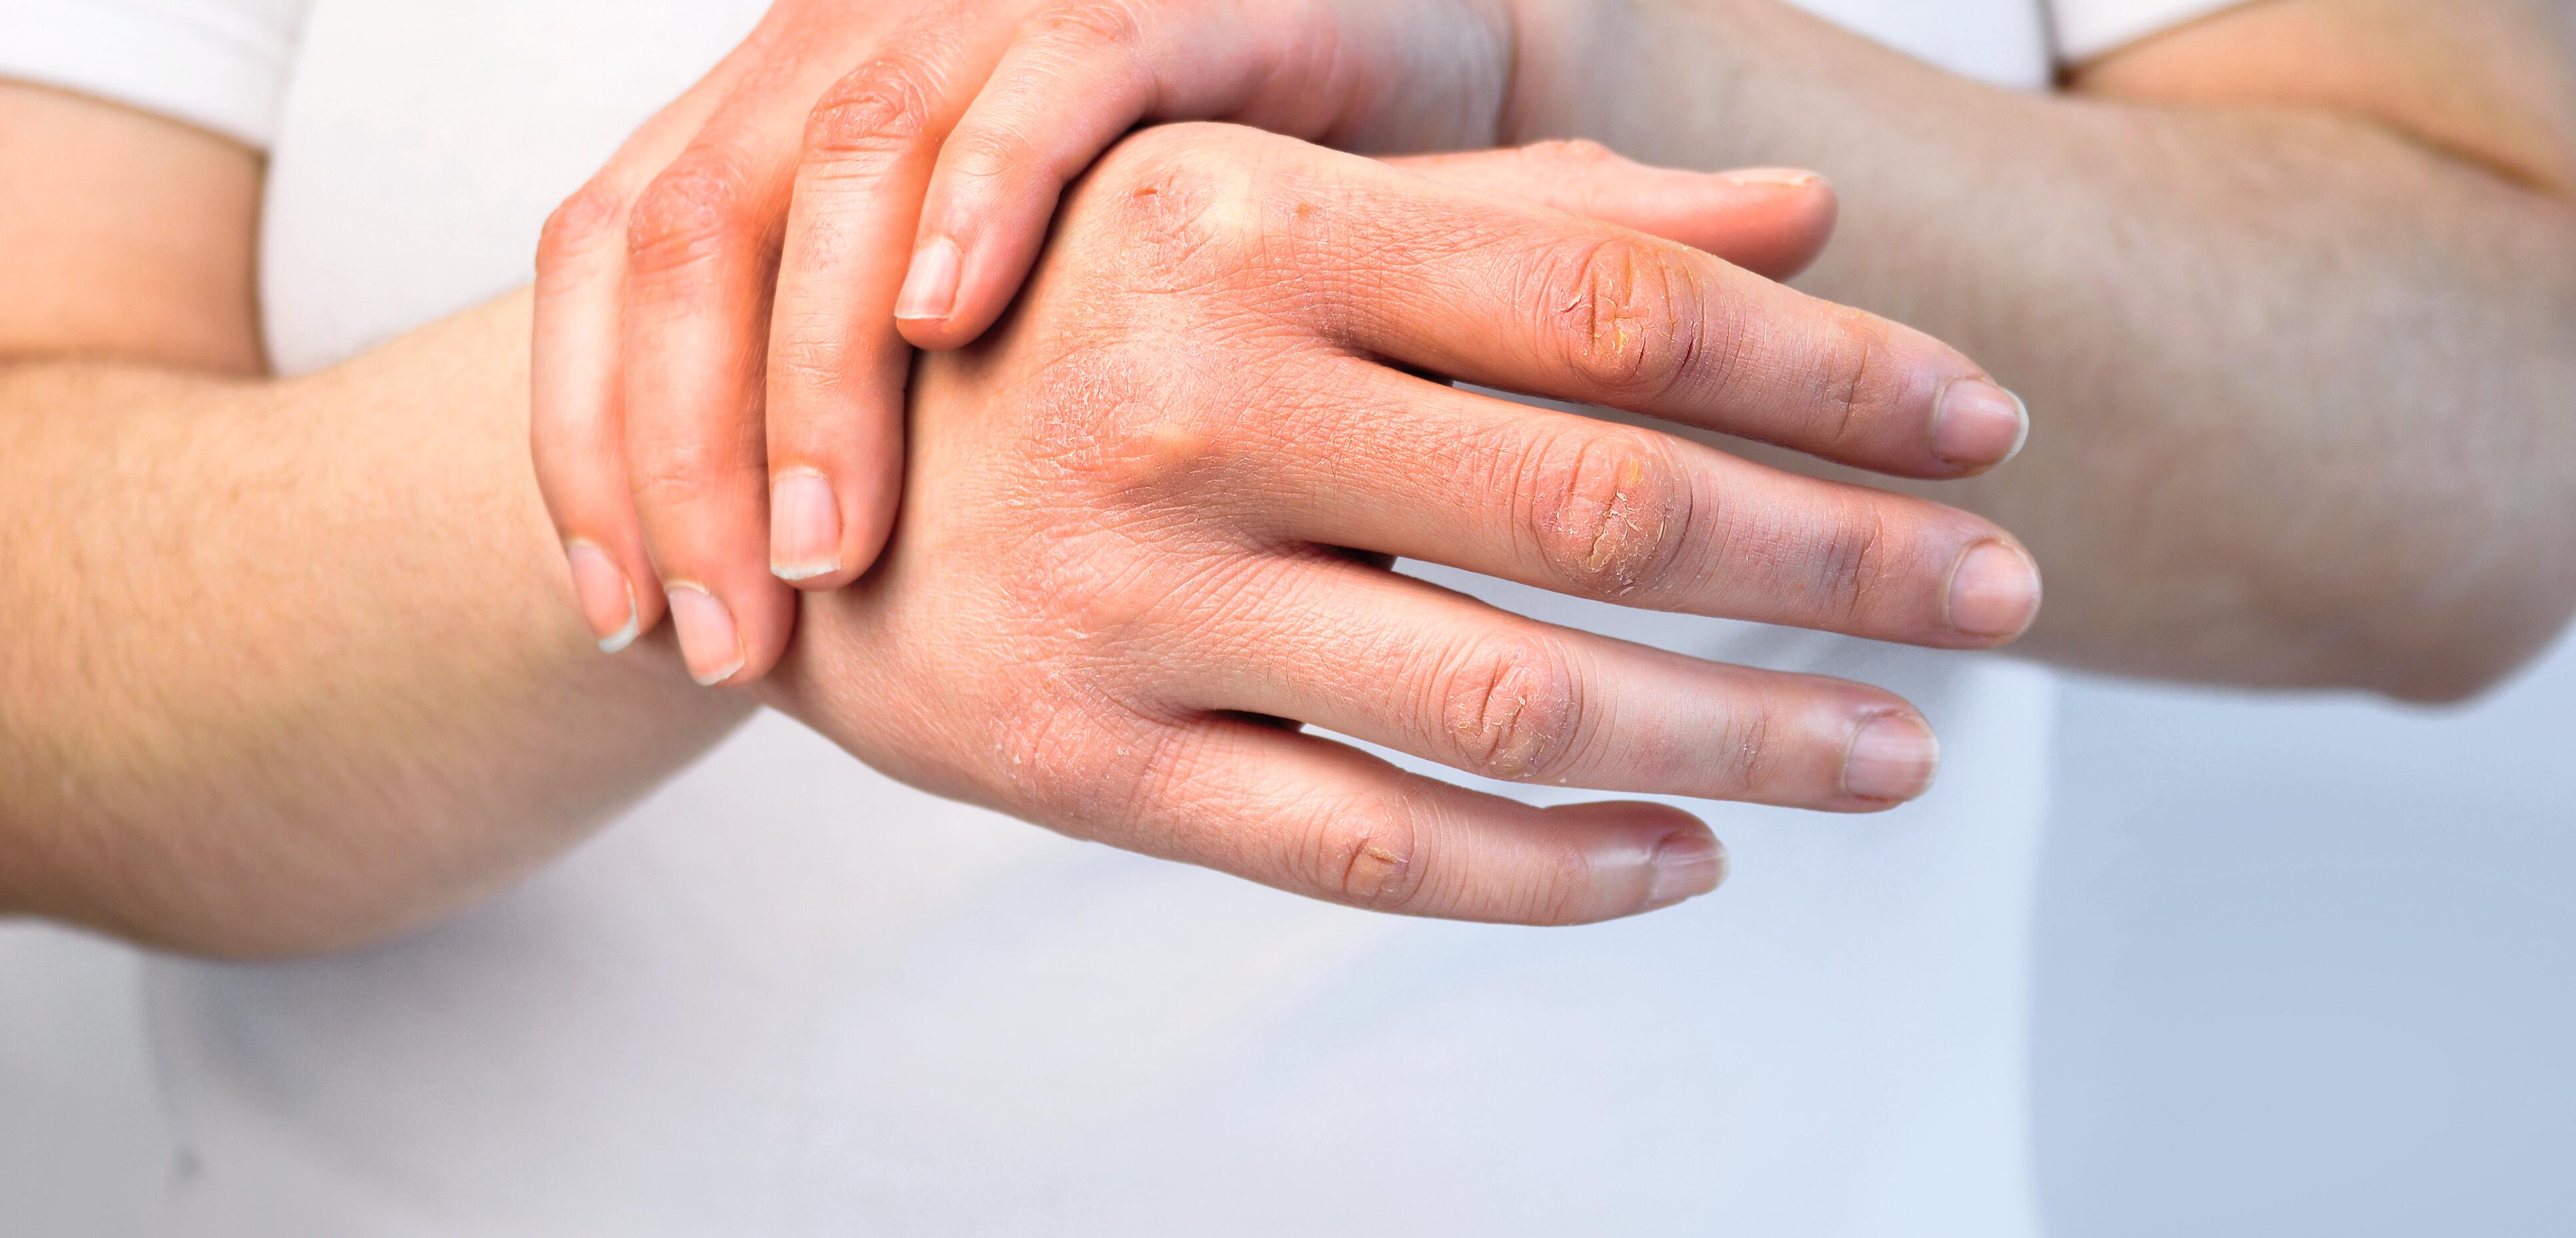 behandeling in de rij gaan staan Regelmatig Contactallergie, eczeem op de handen kalmeren | A-DERMA